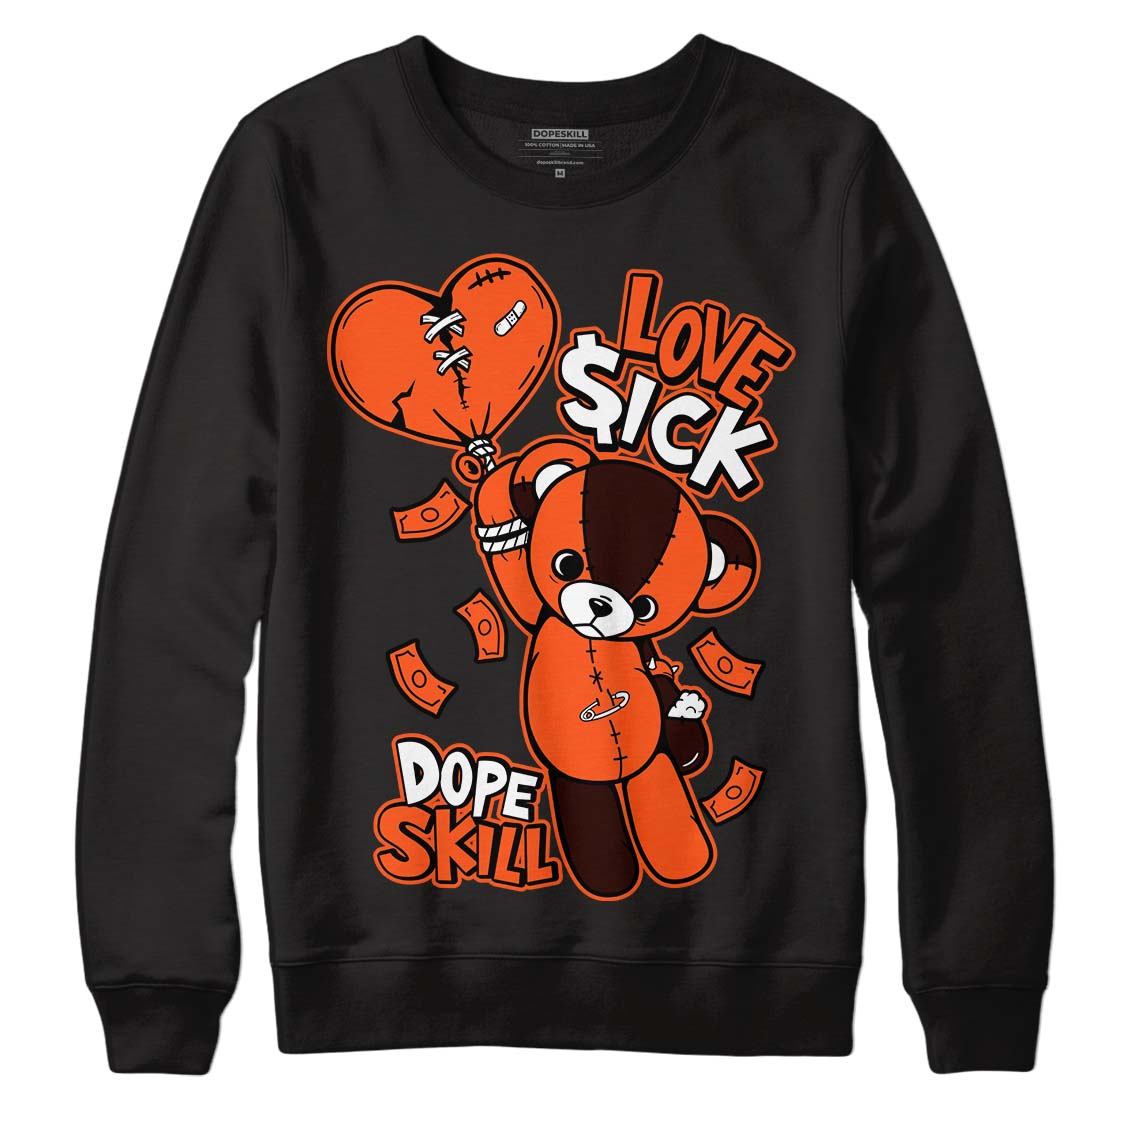 Starfish 1s DopeSkill Sweatshirt Love Sick Graphic - Black